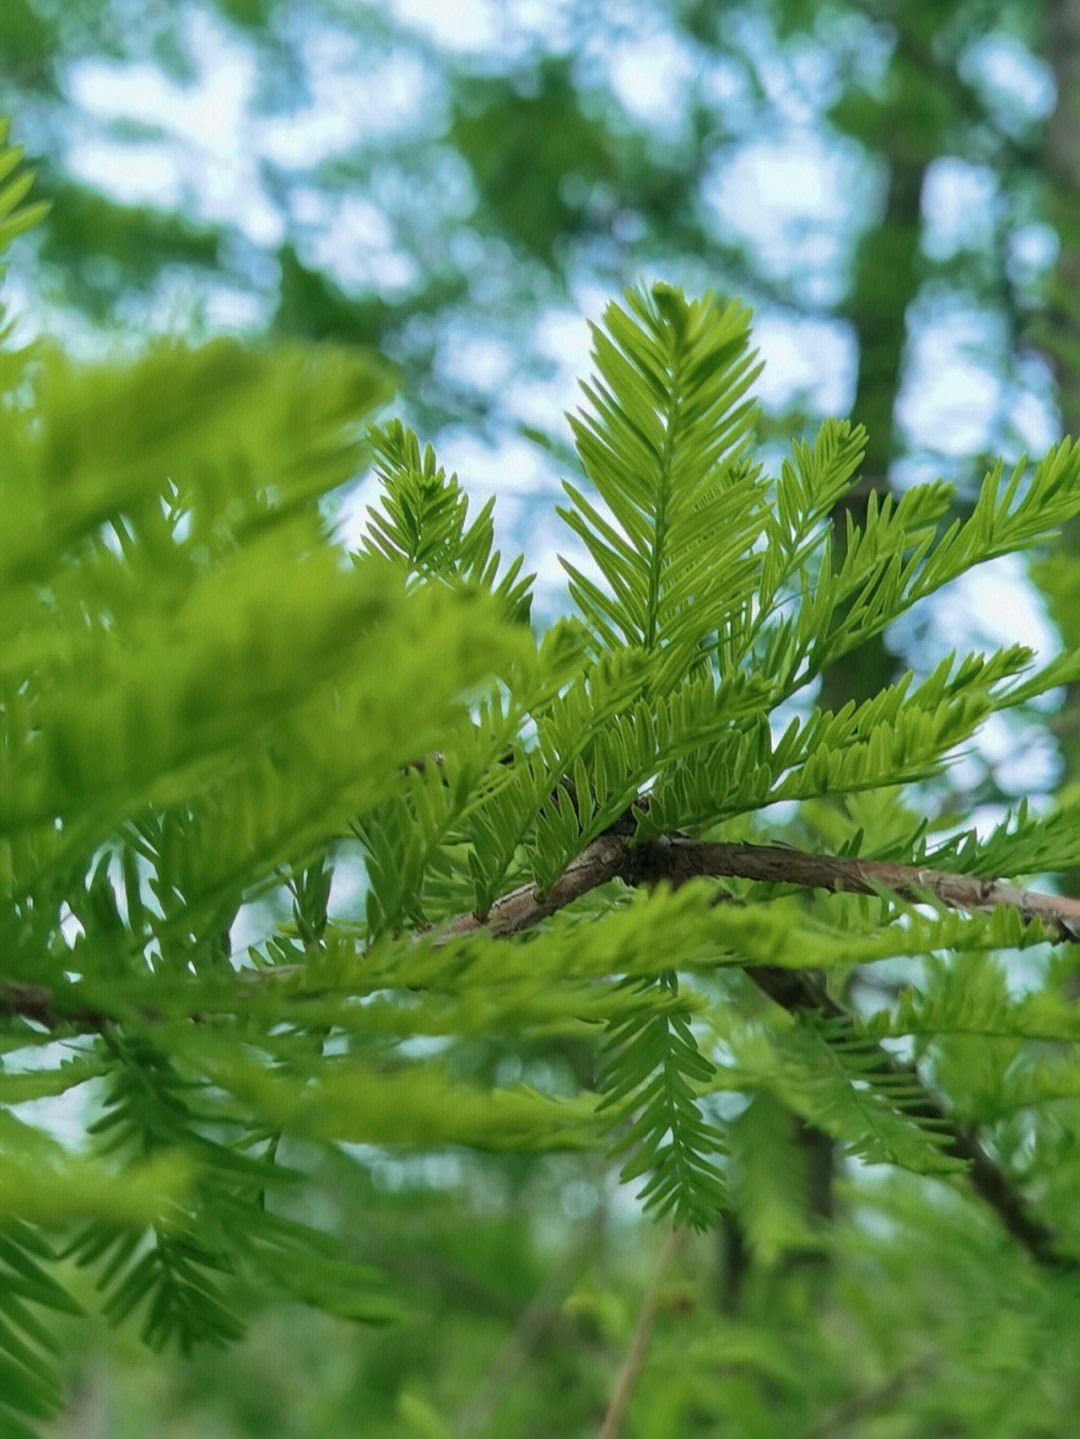 那春天的落羽杉就代表着不息的生命力量,枝条层层舒展,柔软下垂,倒映